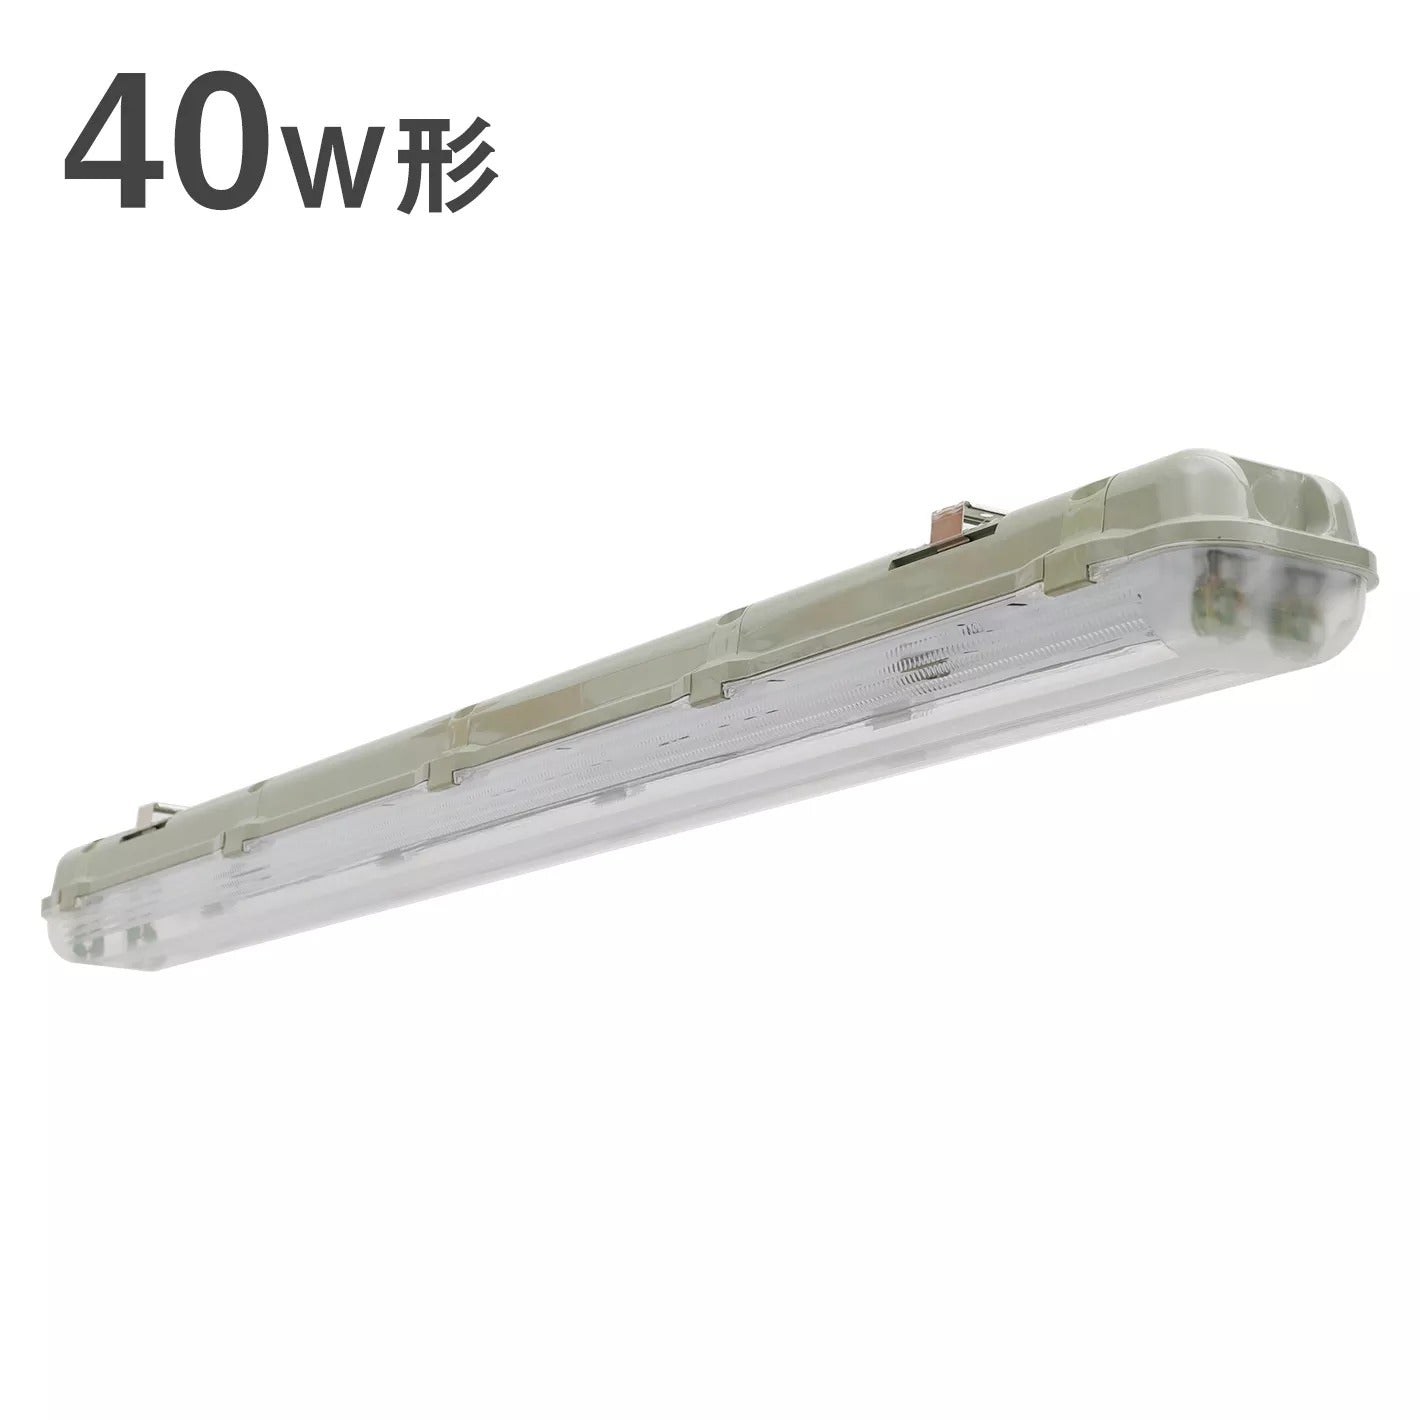 共同照明】LEDベースライト 蛍光灯器具 40W形 2灯式 防水防雨 防噴流